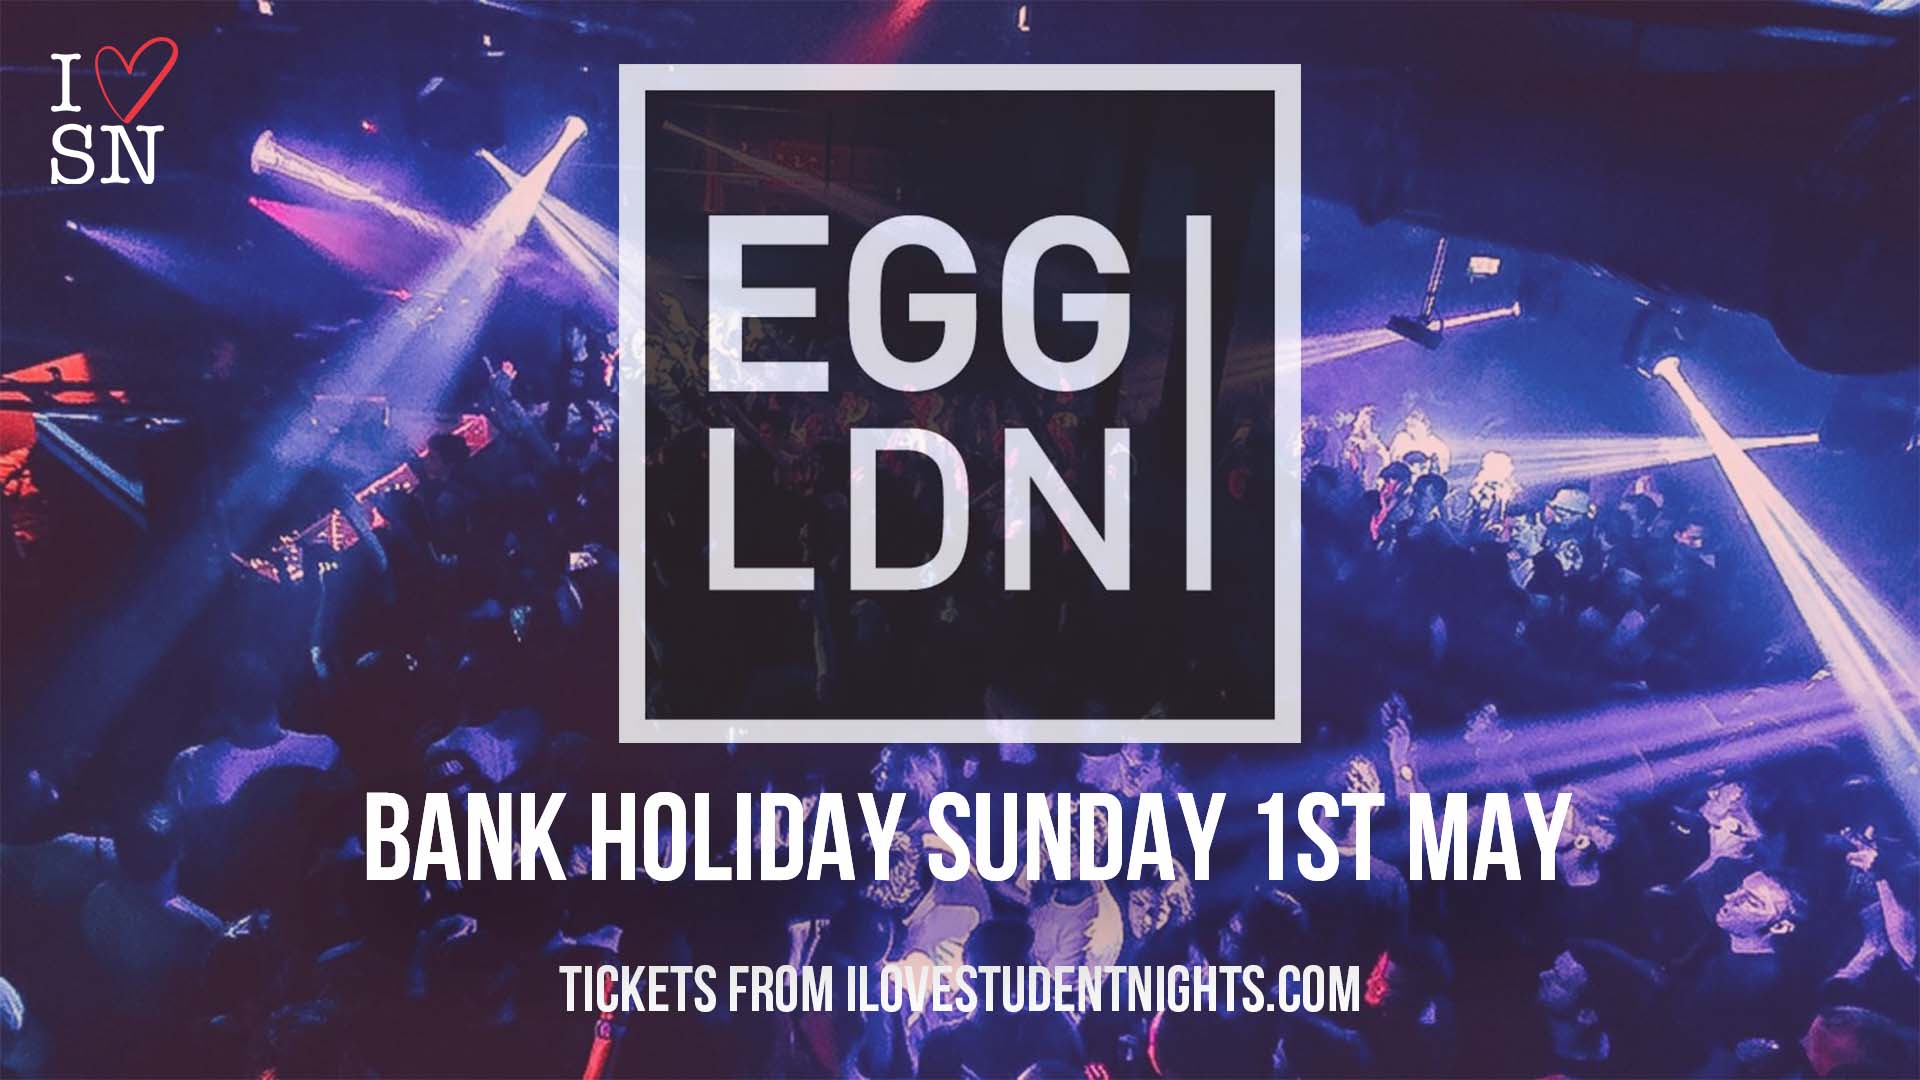 Egg LDN Bank Holiday